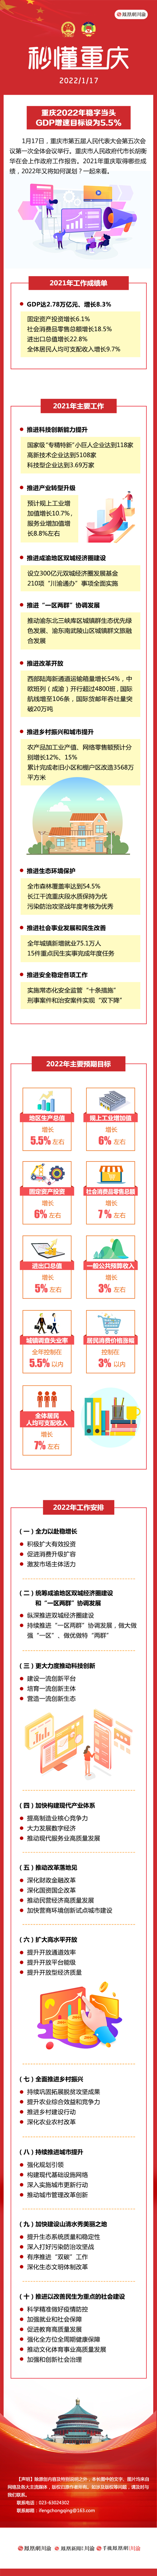 秒懂重庆 | 重庆2022年稳字当头 GDP增速目标设为5.5%